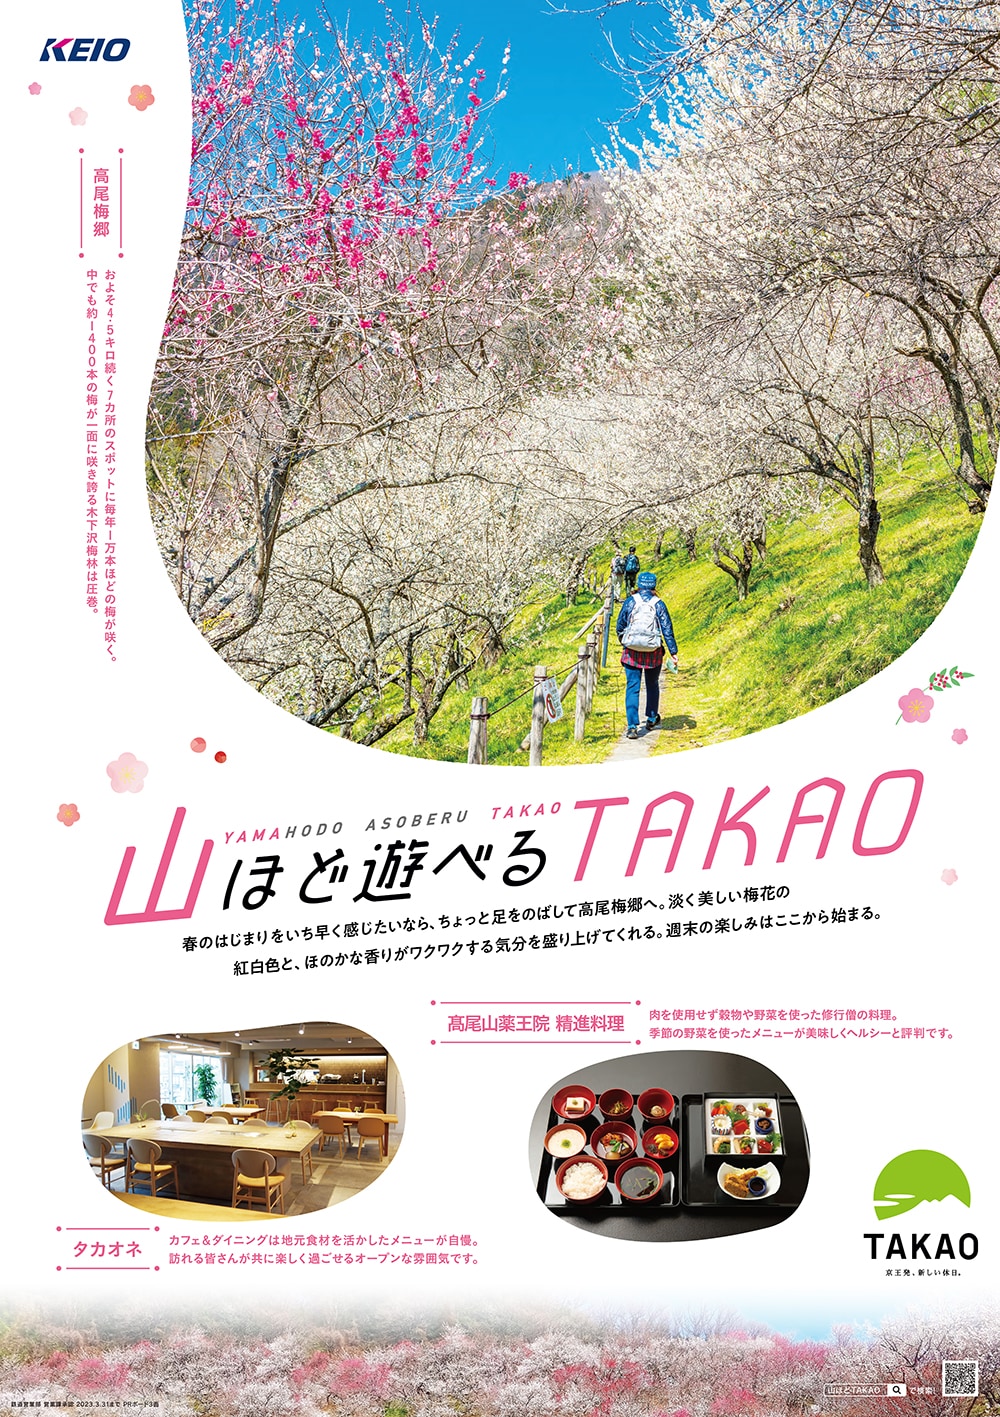 歩くたび春のはじまりがきっと見つかるーー休日はTAKAOへ。